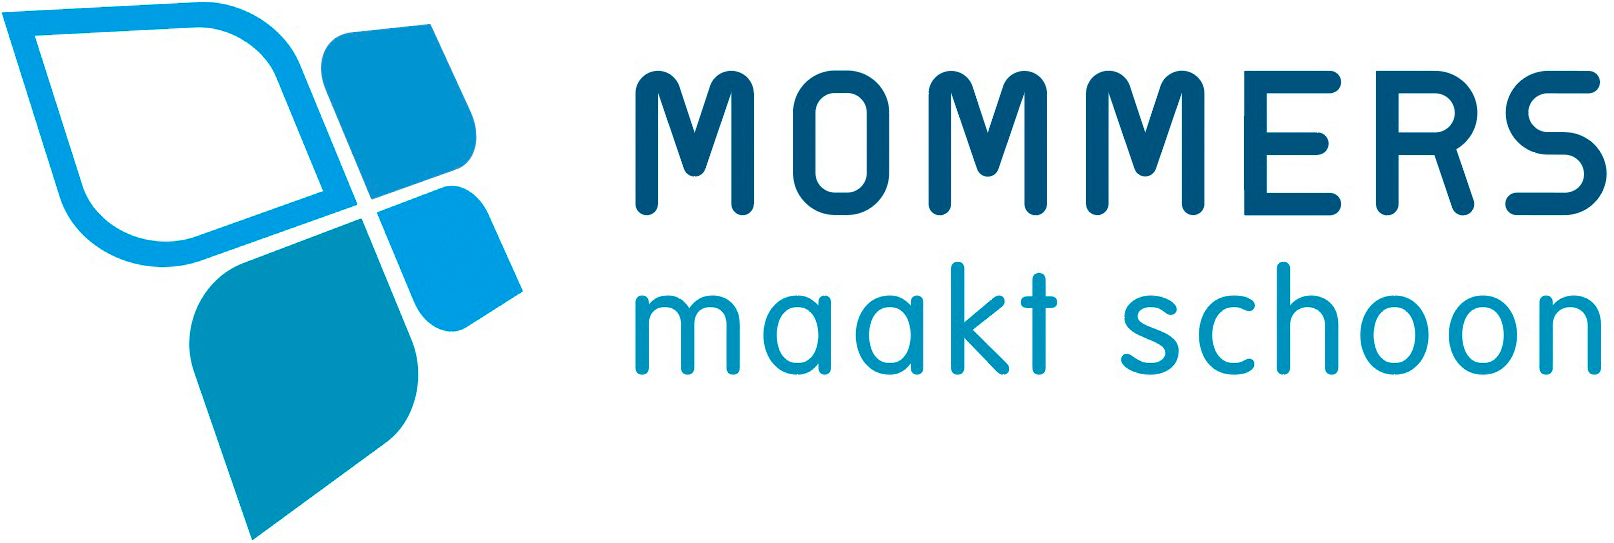 logo MOMMERS maakt schoon 2020